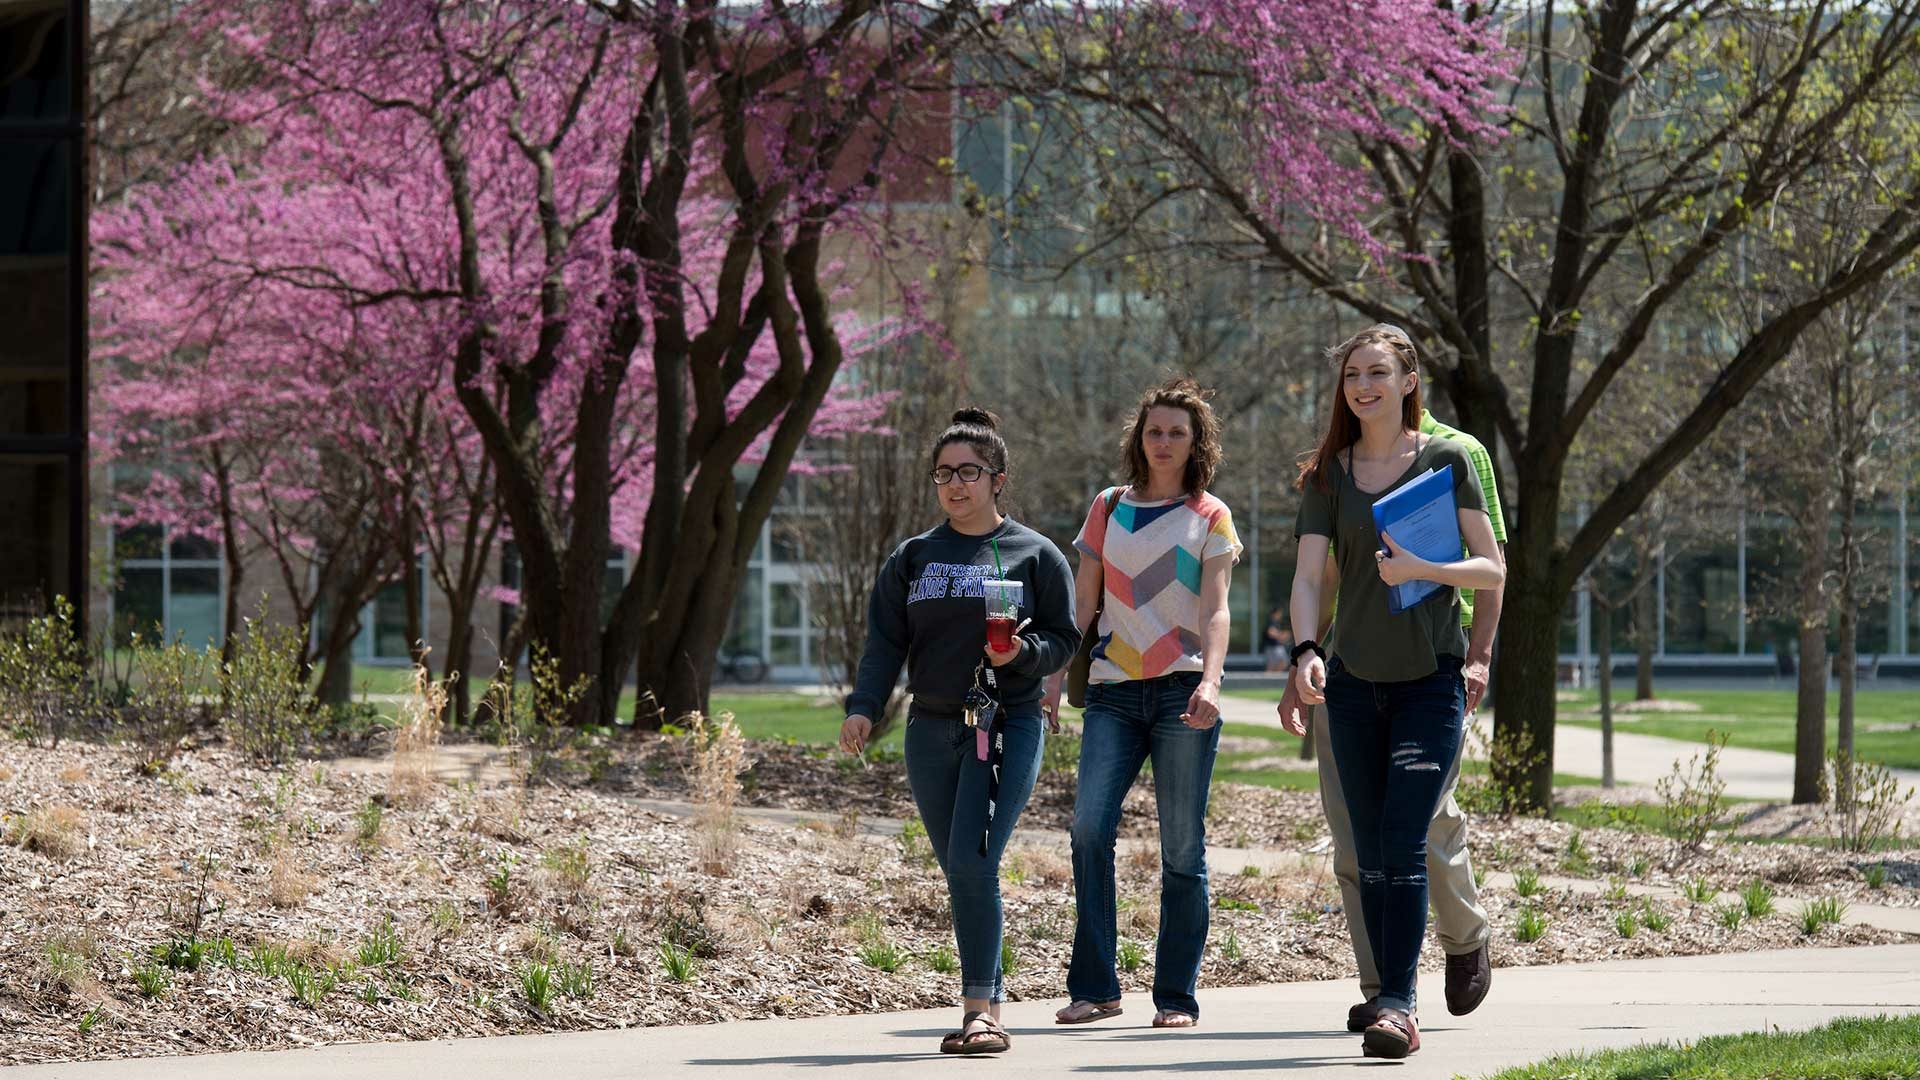 women walking on campus